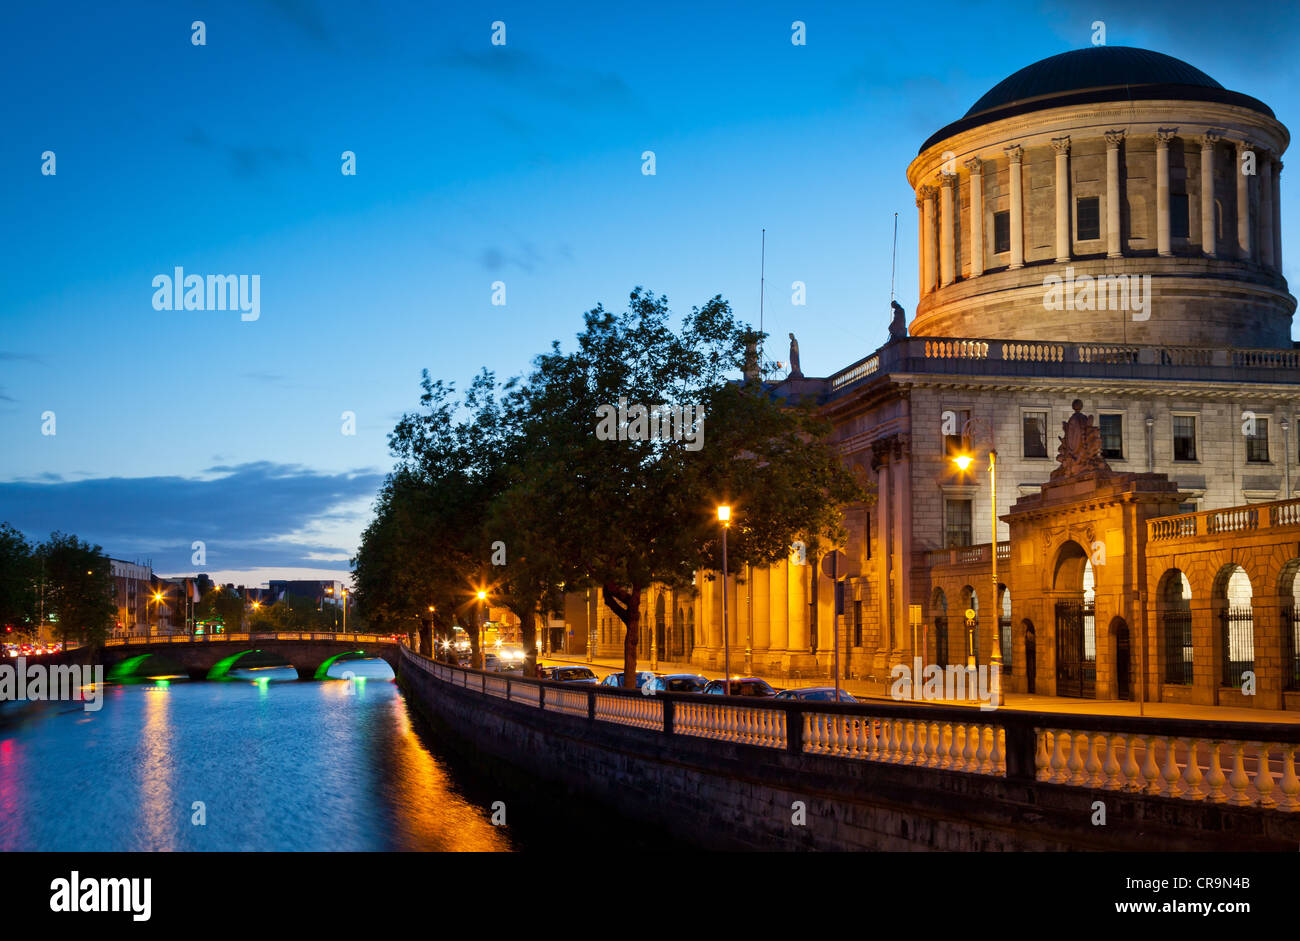 Das Four Courts in Dublin ist Haupt Gerichte der Republik Irland Gebäude Stockfoto